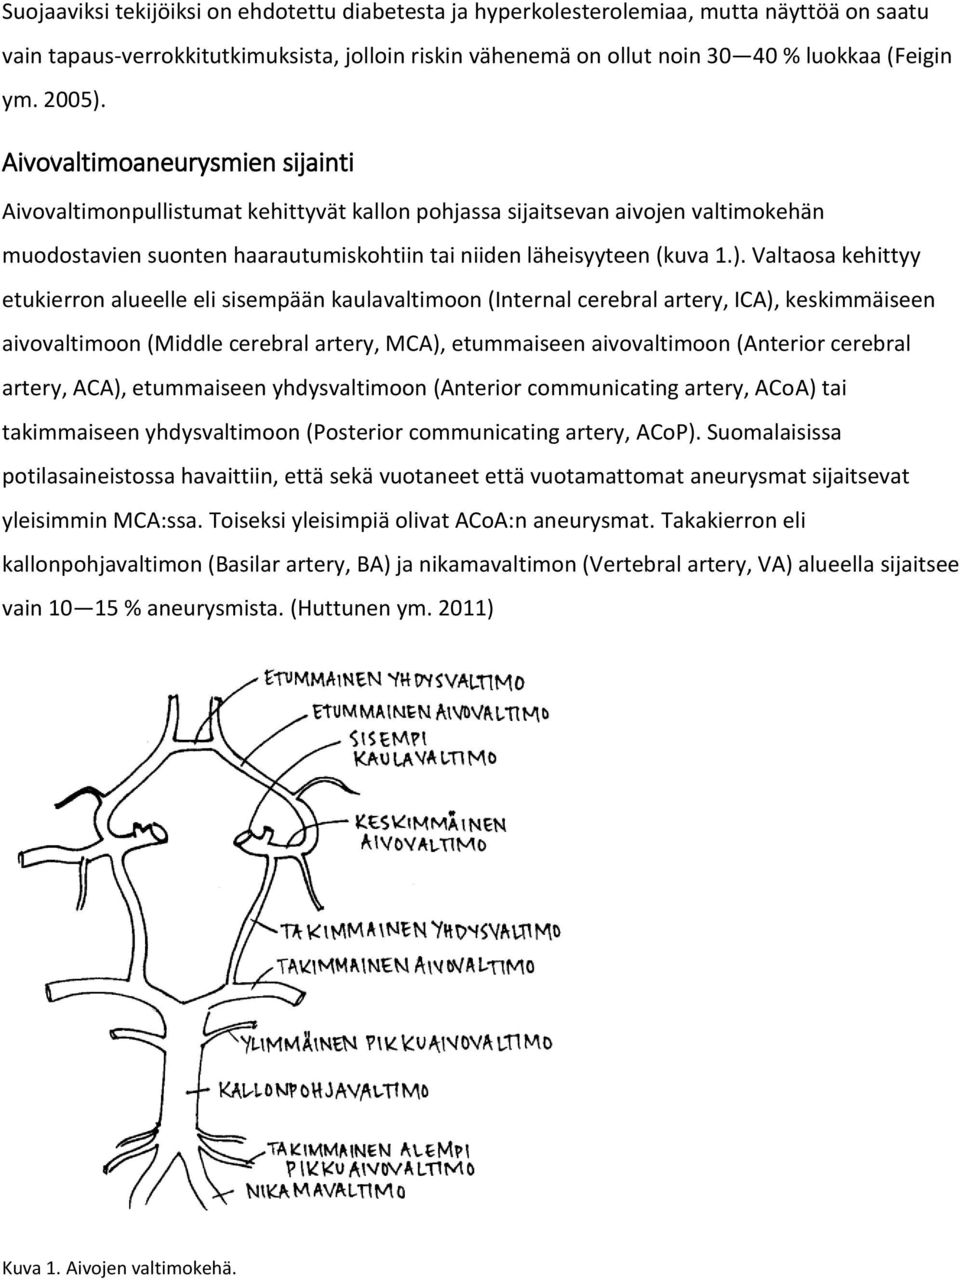 Aivovaltimoaneurysmien sijainti Aivovaltimonpullistumat kehittyvät kallon pohjassa sijaitsevan aivojen valtimokehän muodostavien suonten haarautumiskohtiin tai niiden läheisyyteen (kuva 1.).